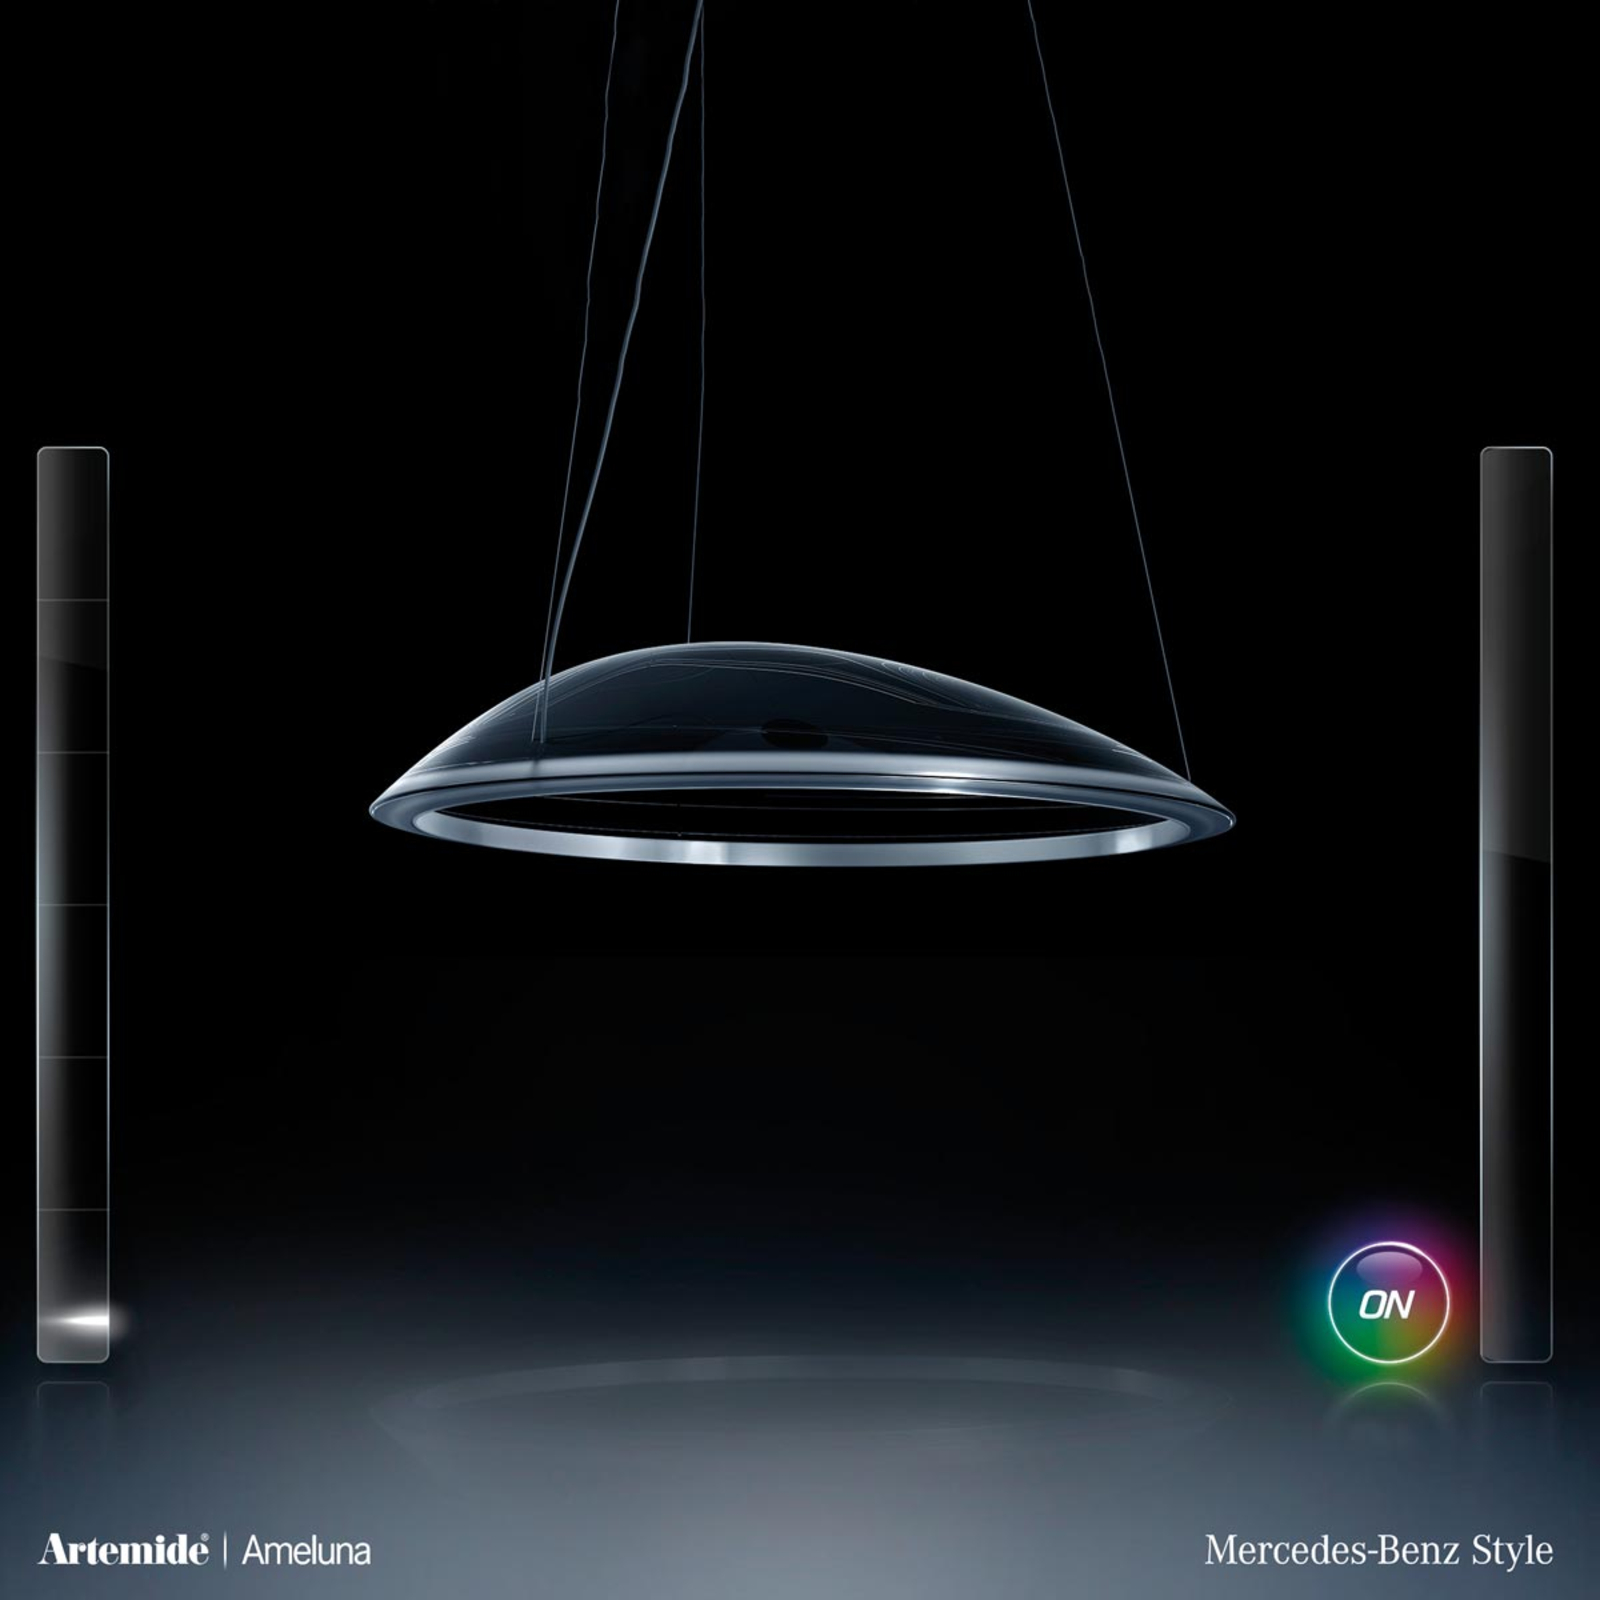 Artemide Ameluna LED pendant light, app control